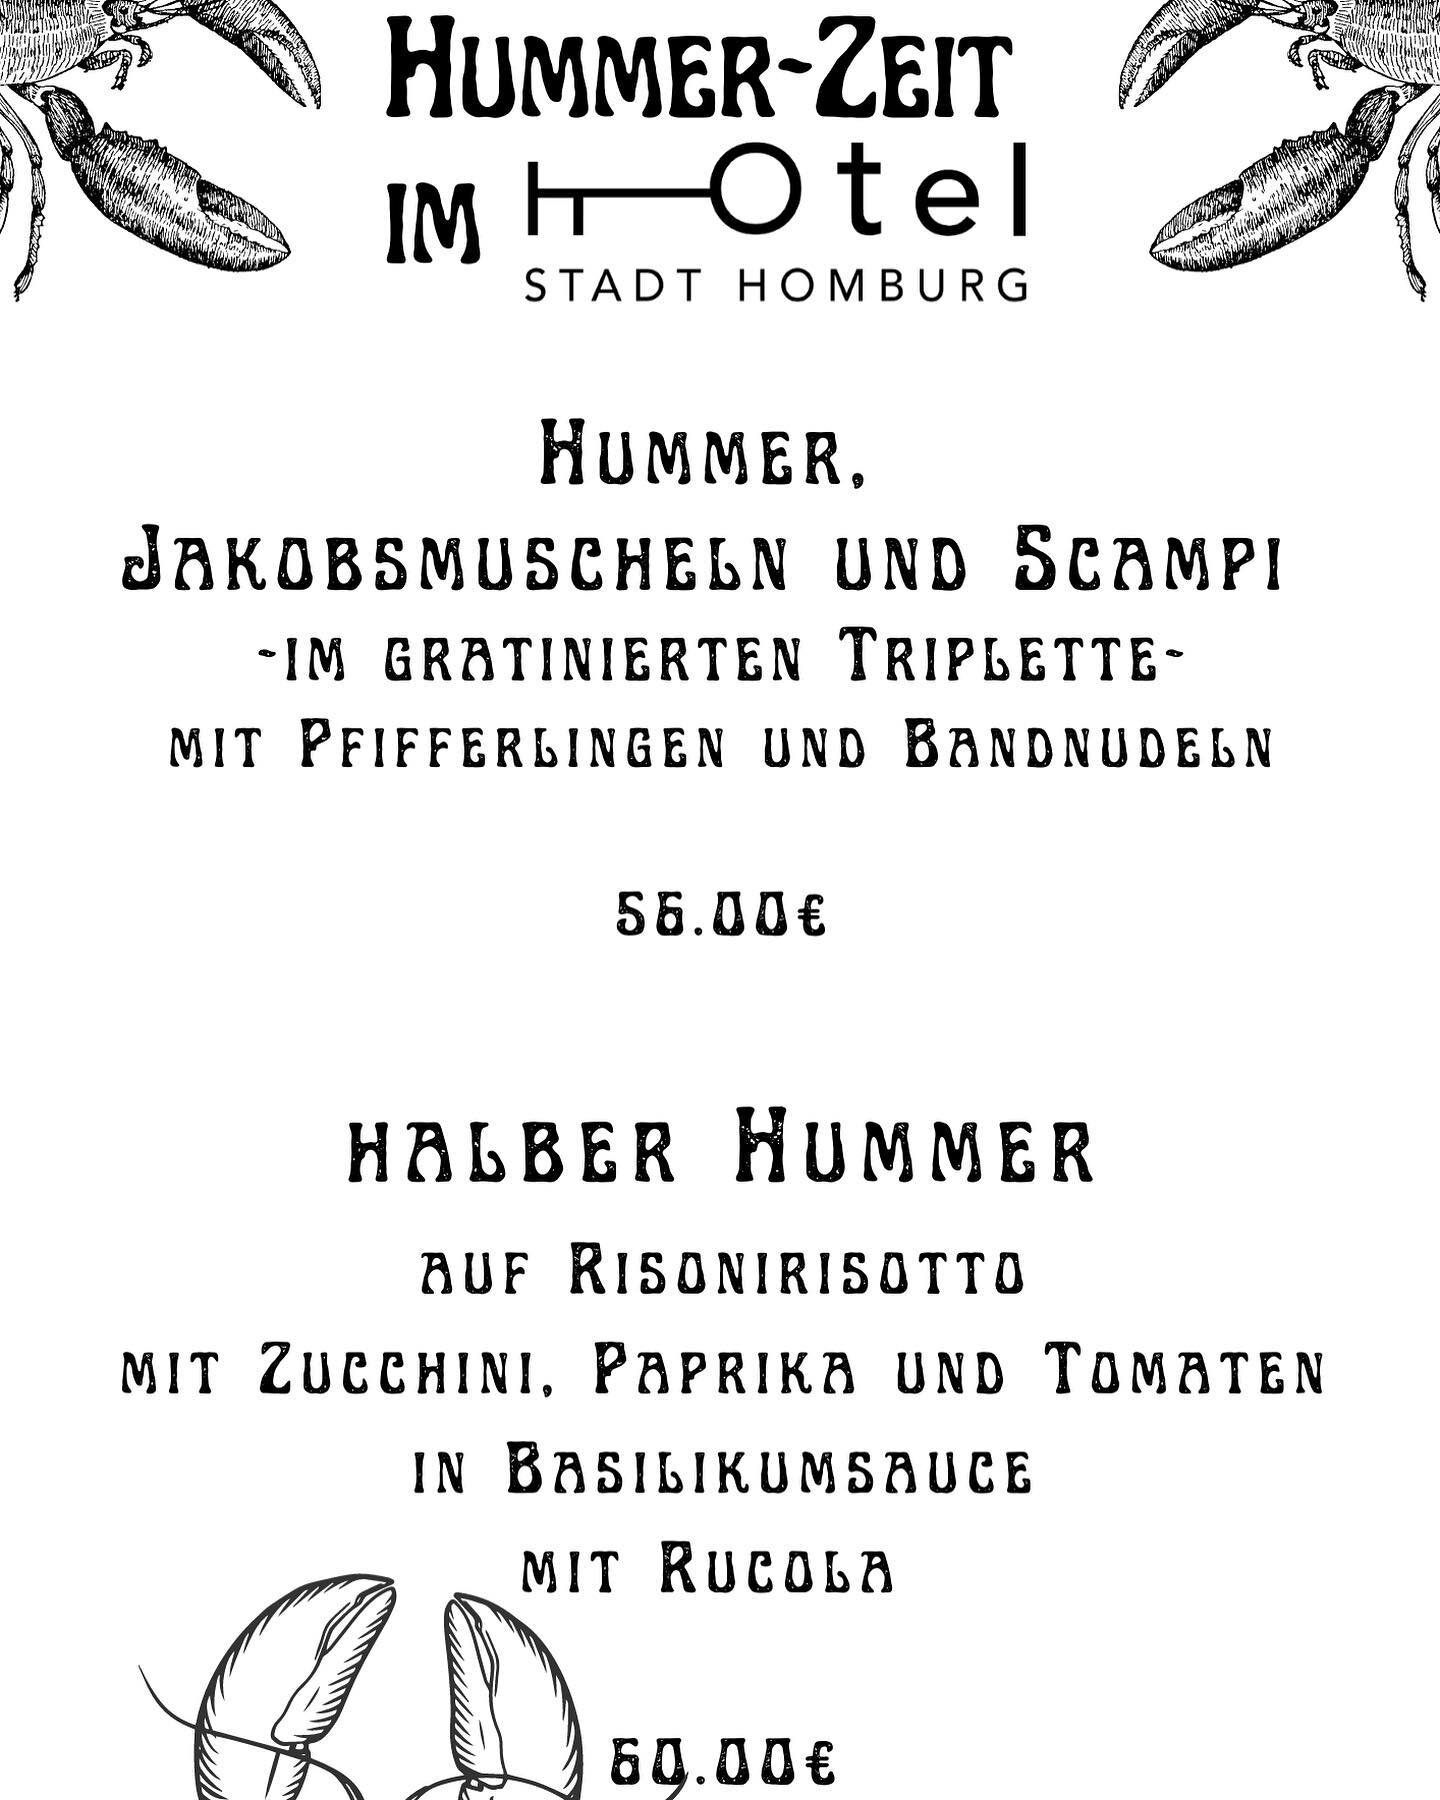 Hummerzeit in unserem Restaurant #homburg #gastrogram #hummer #saarland #saar